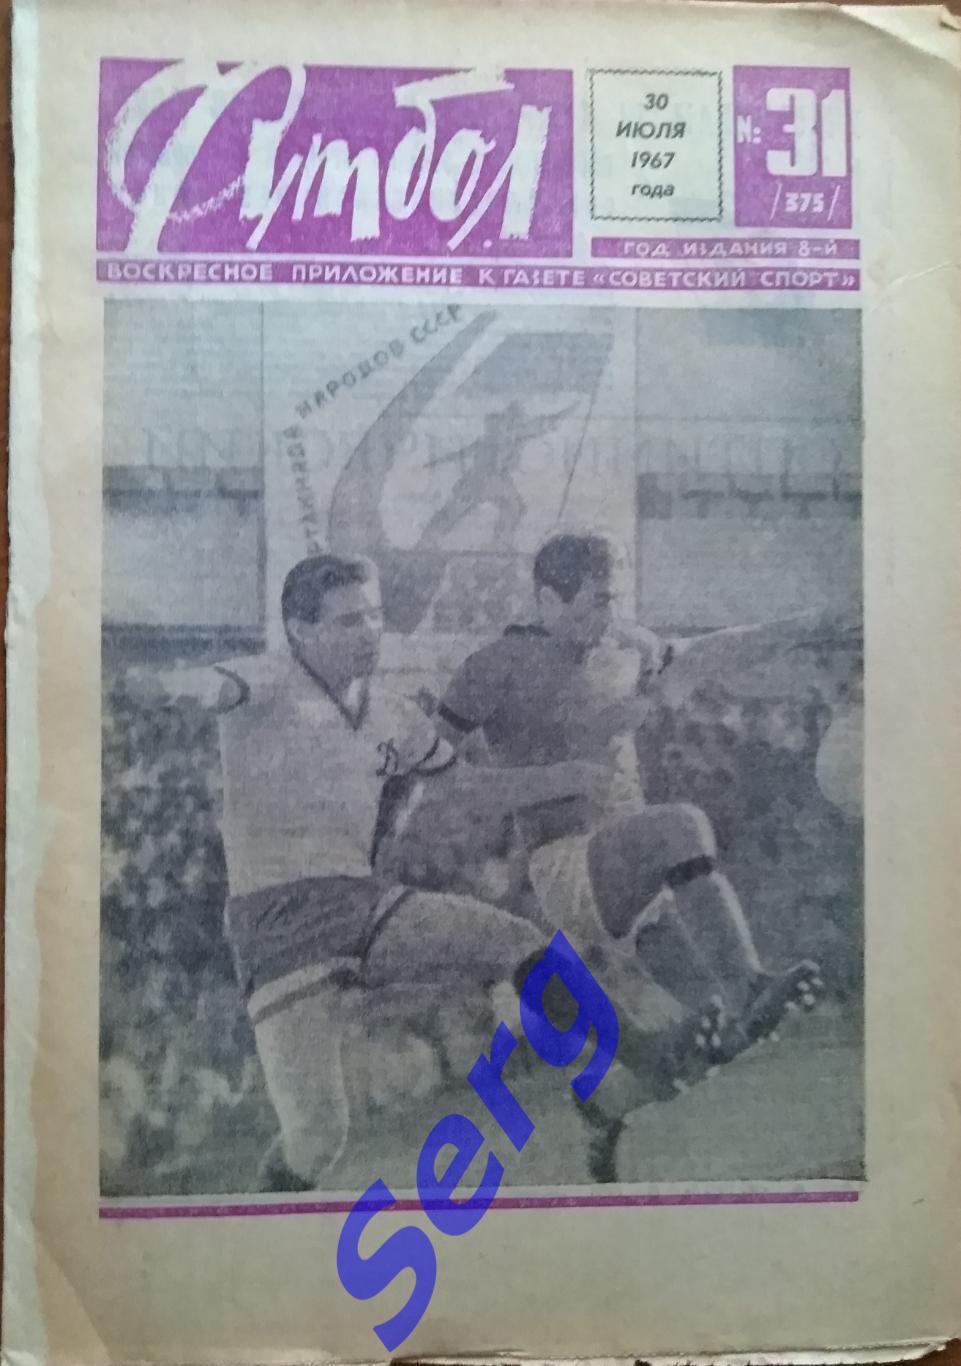 Еженедельник Футбол №31 30 июля 1967 год